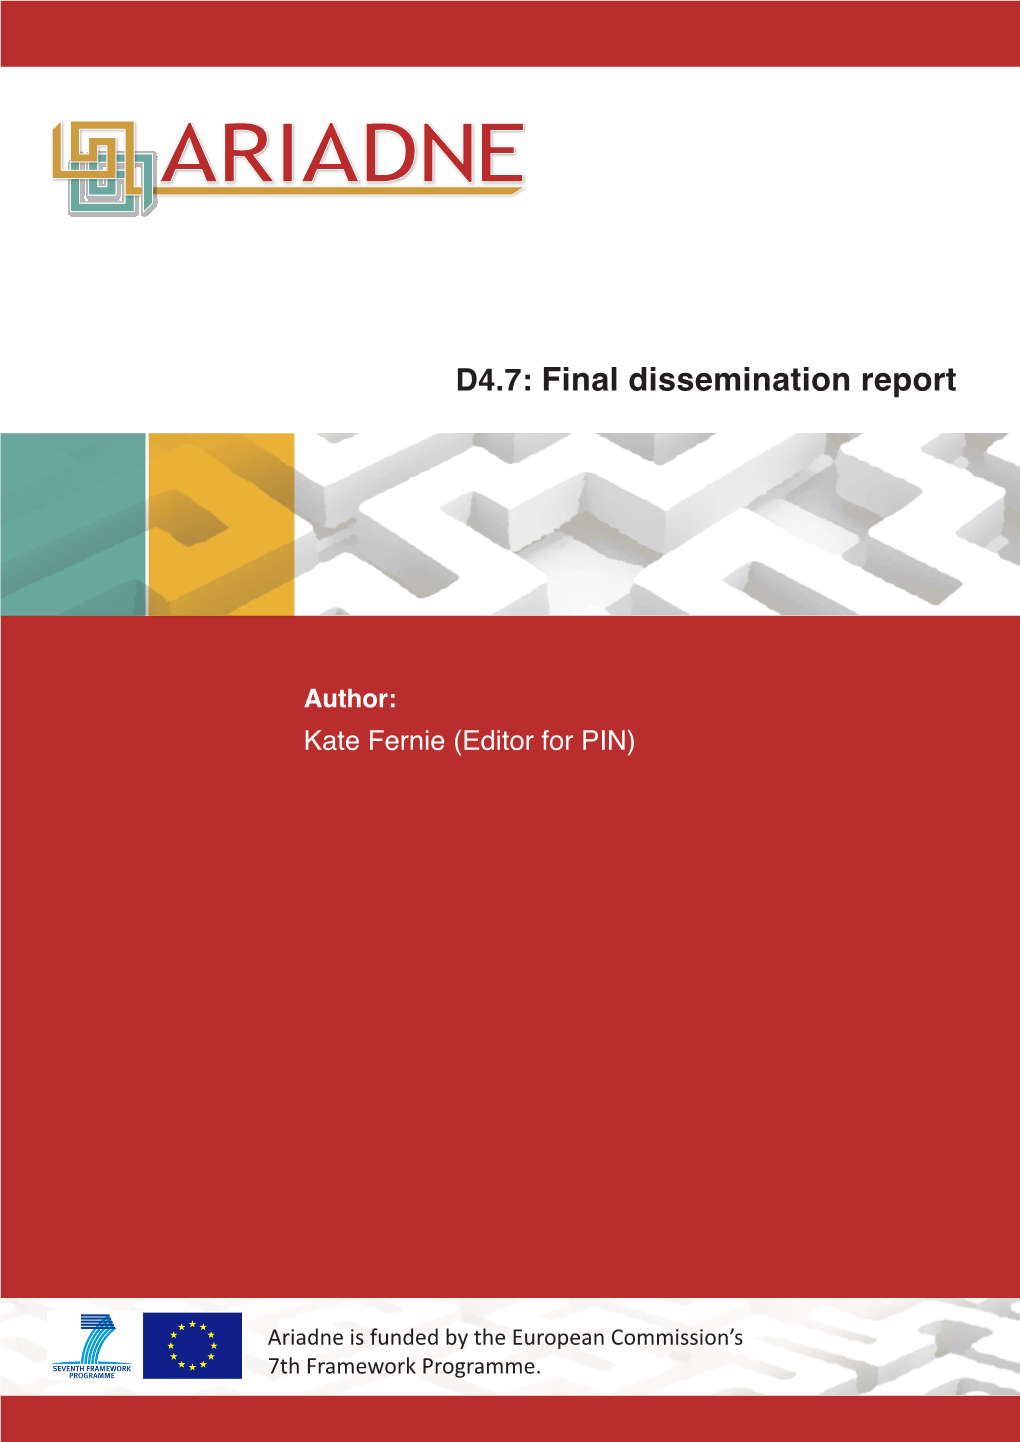 D4.7 Final Dissemination Report